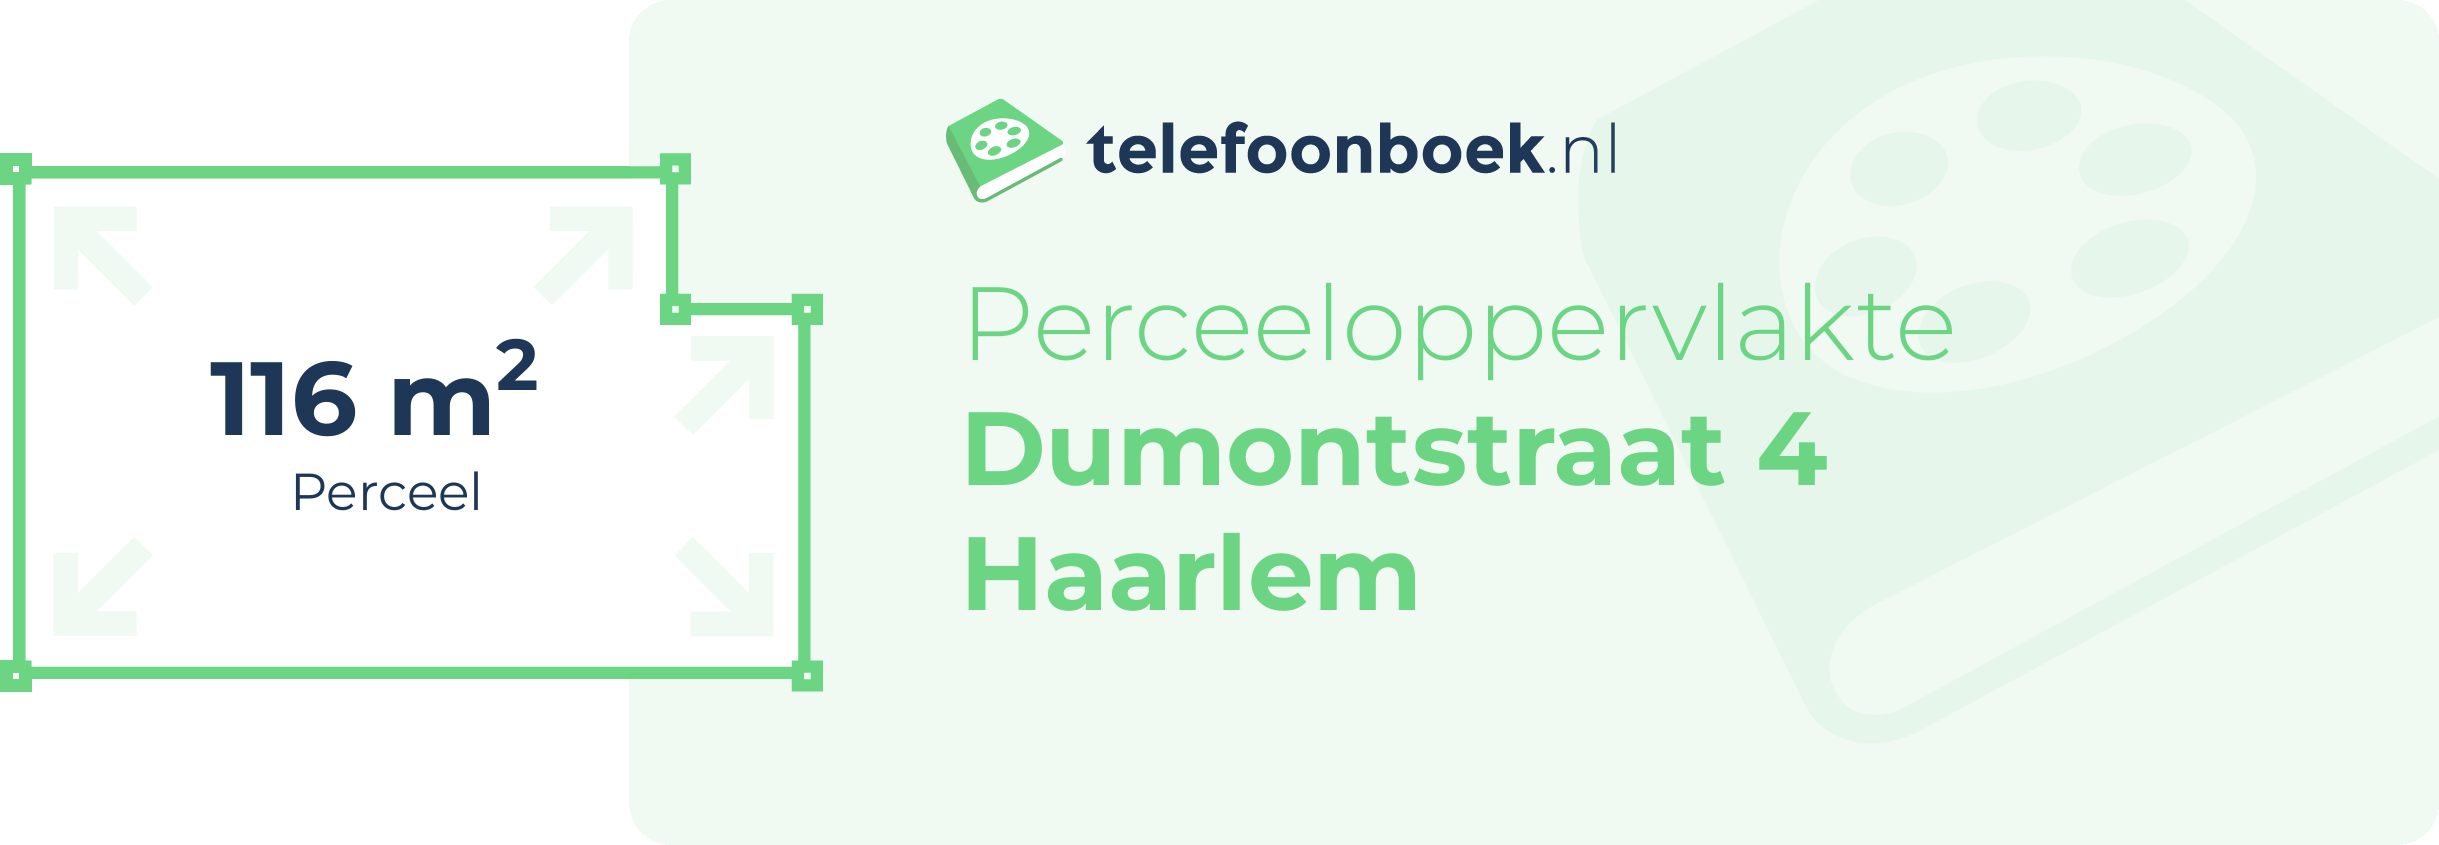 Perceeloppervlakte Dumontstraat 4 Haarlem